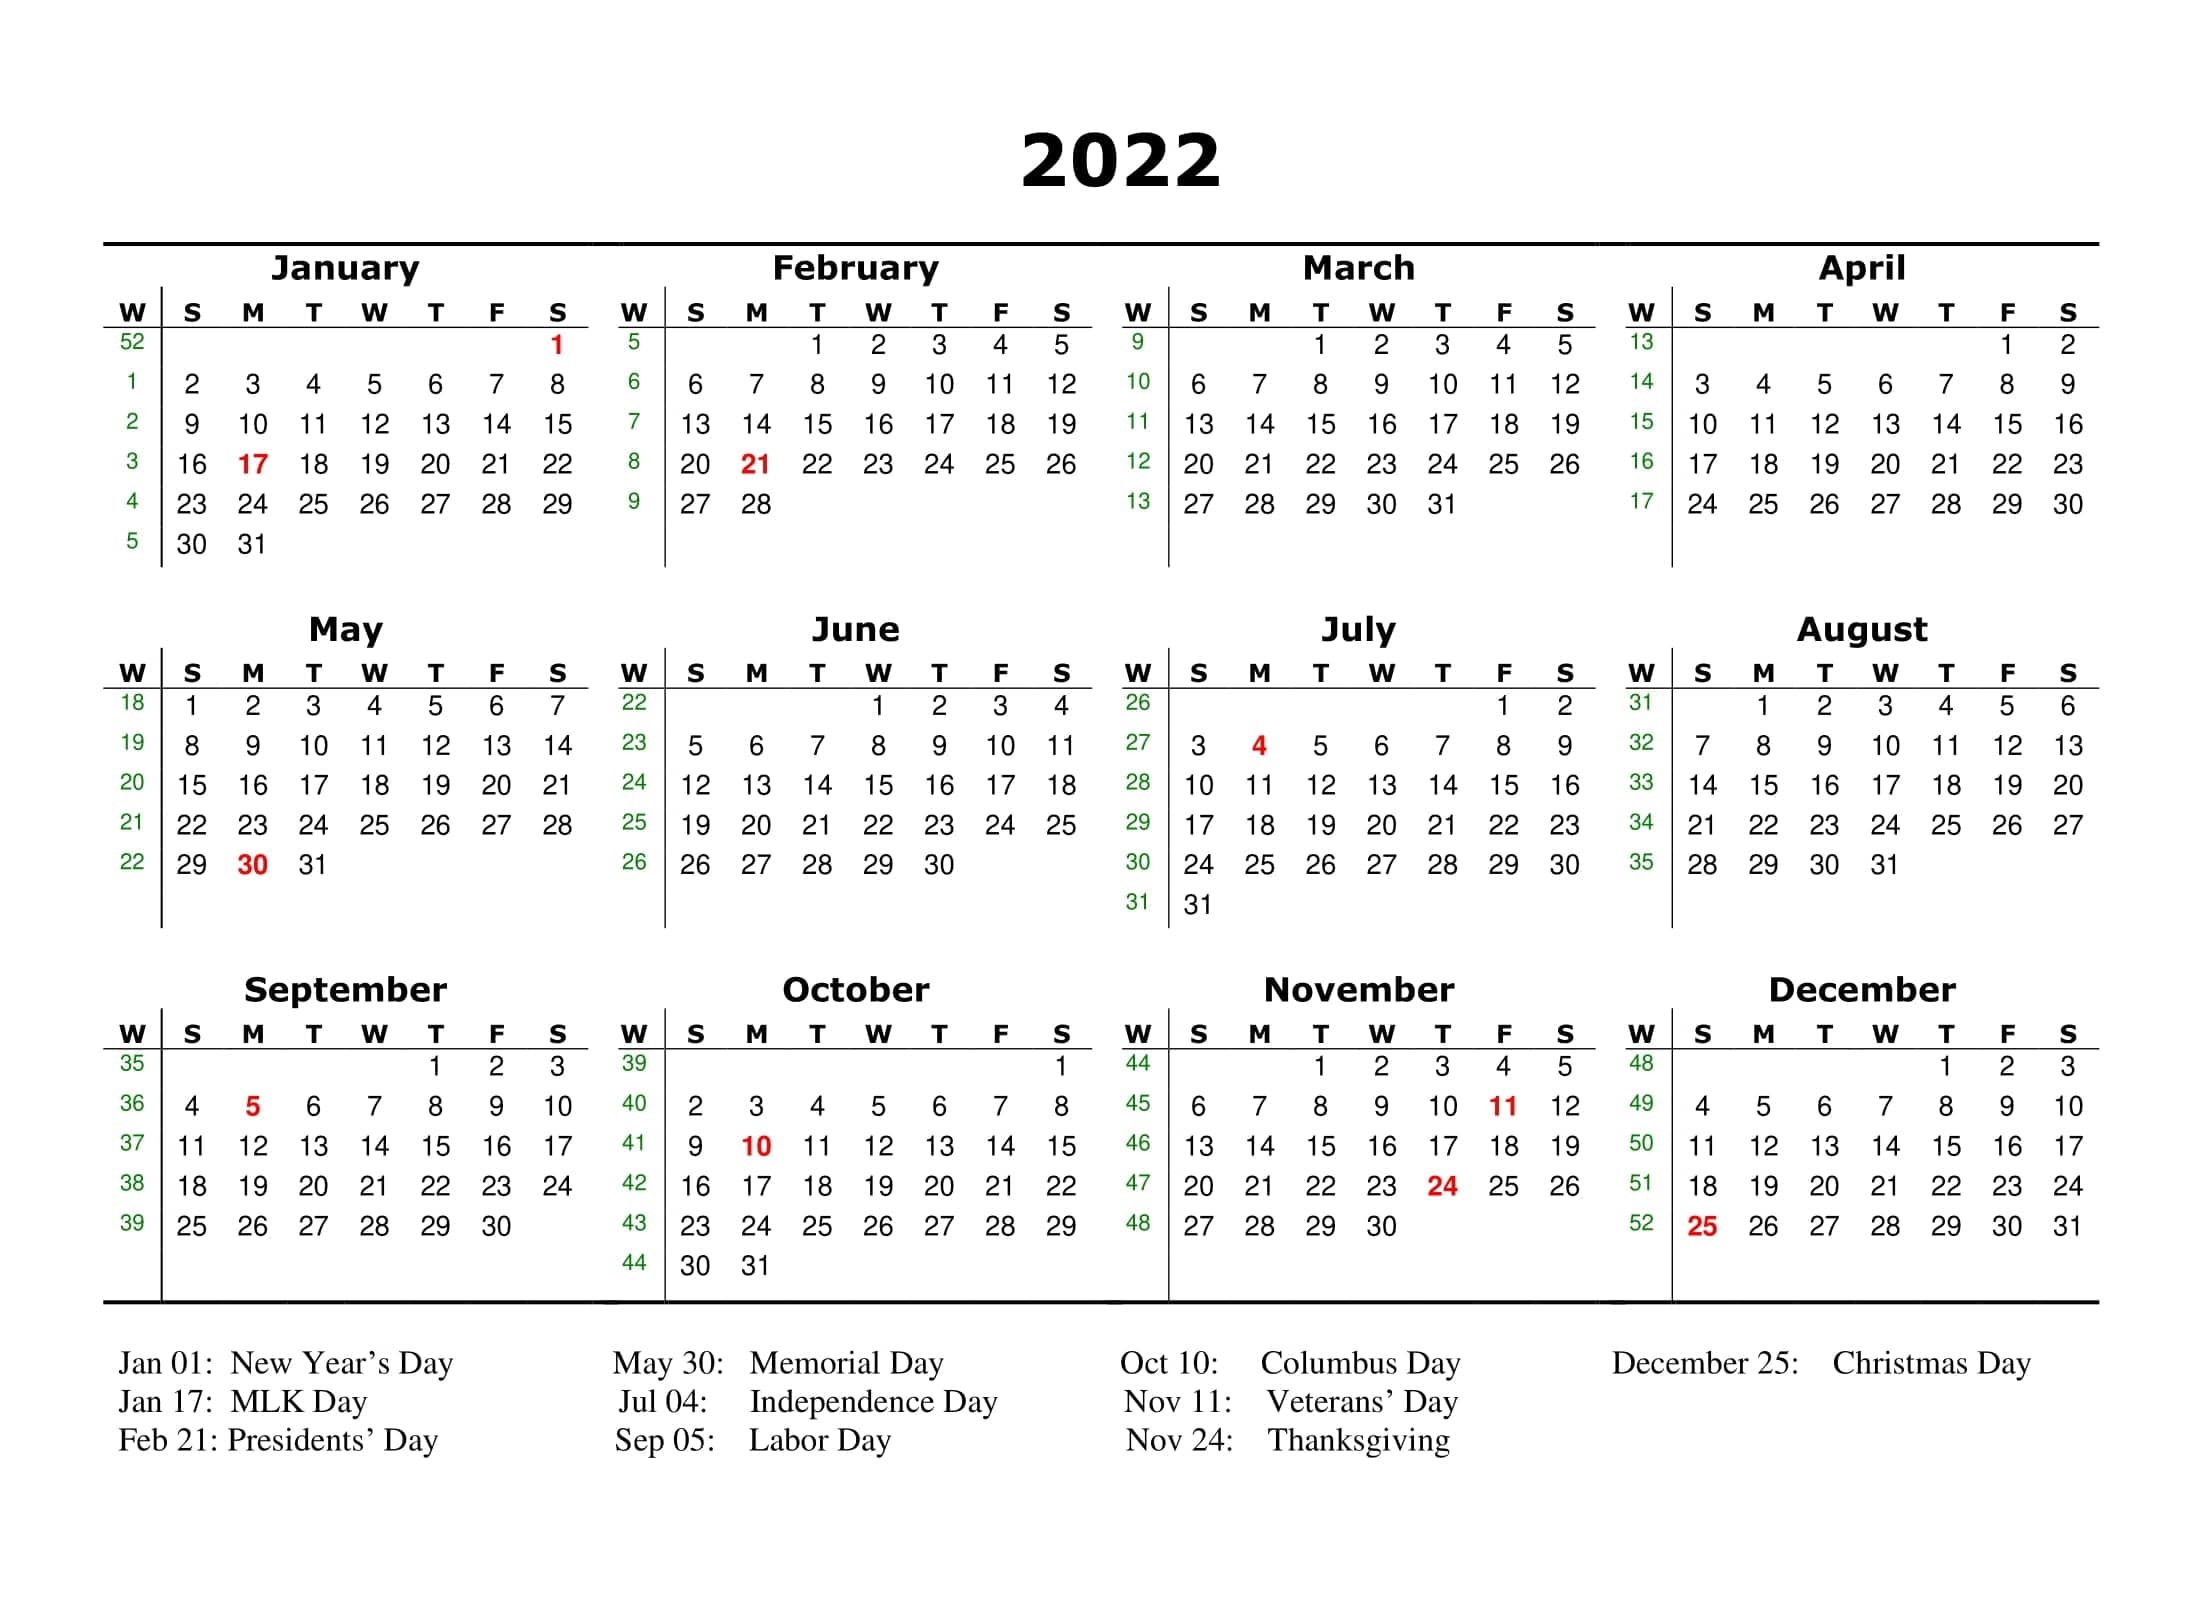 Holiday List 2022